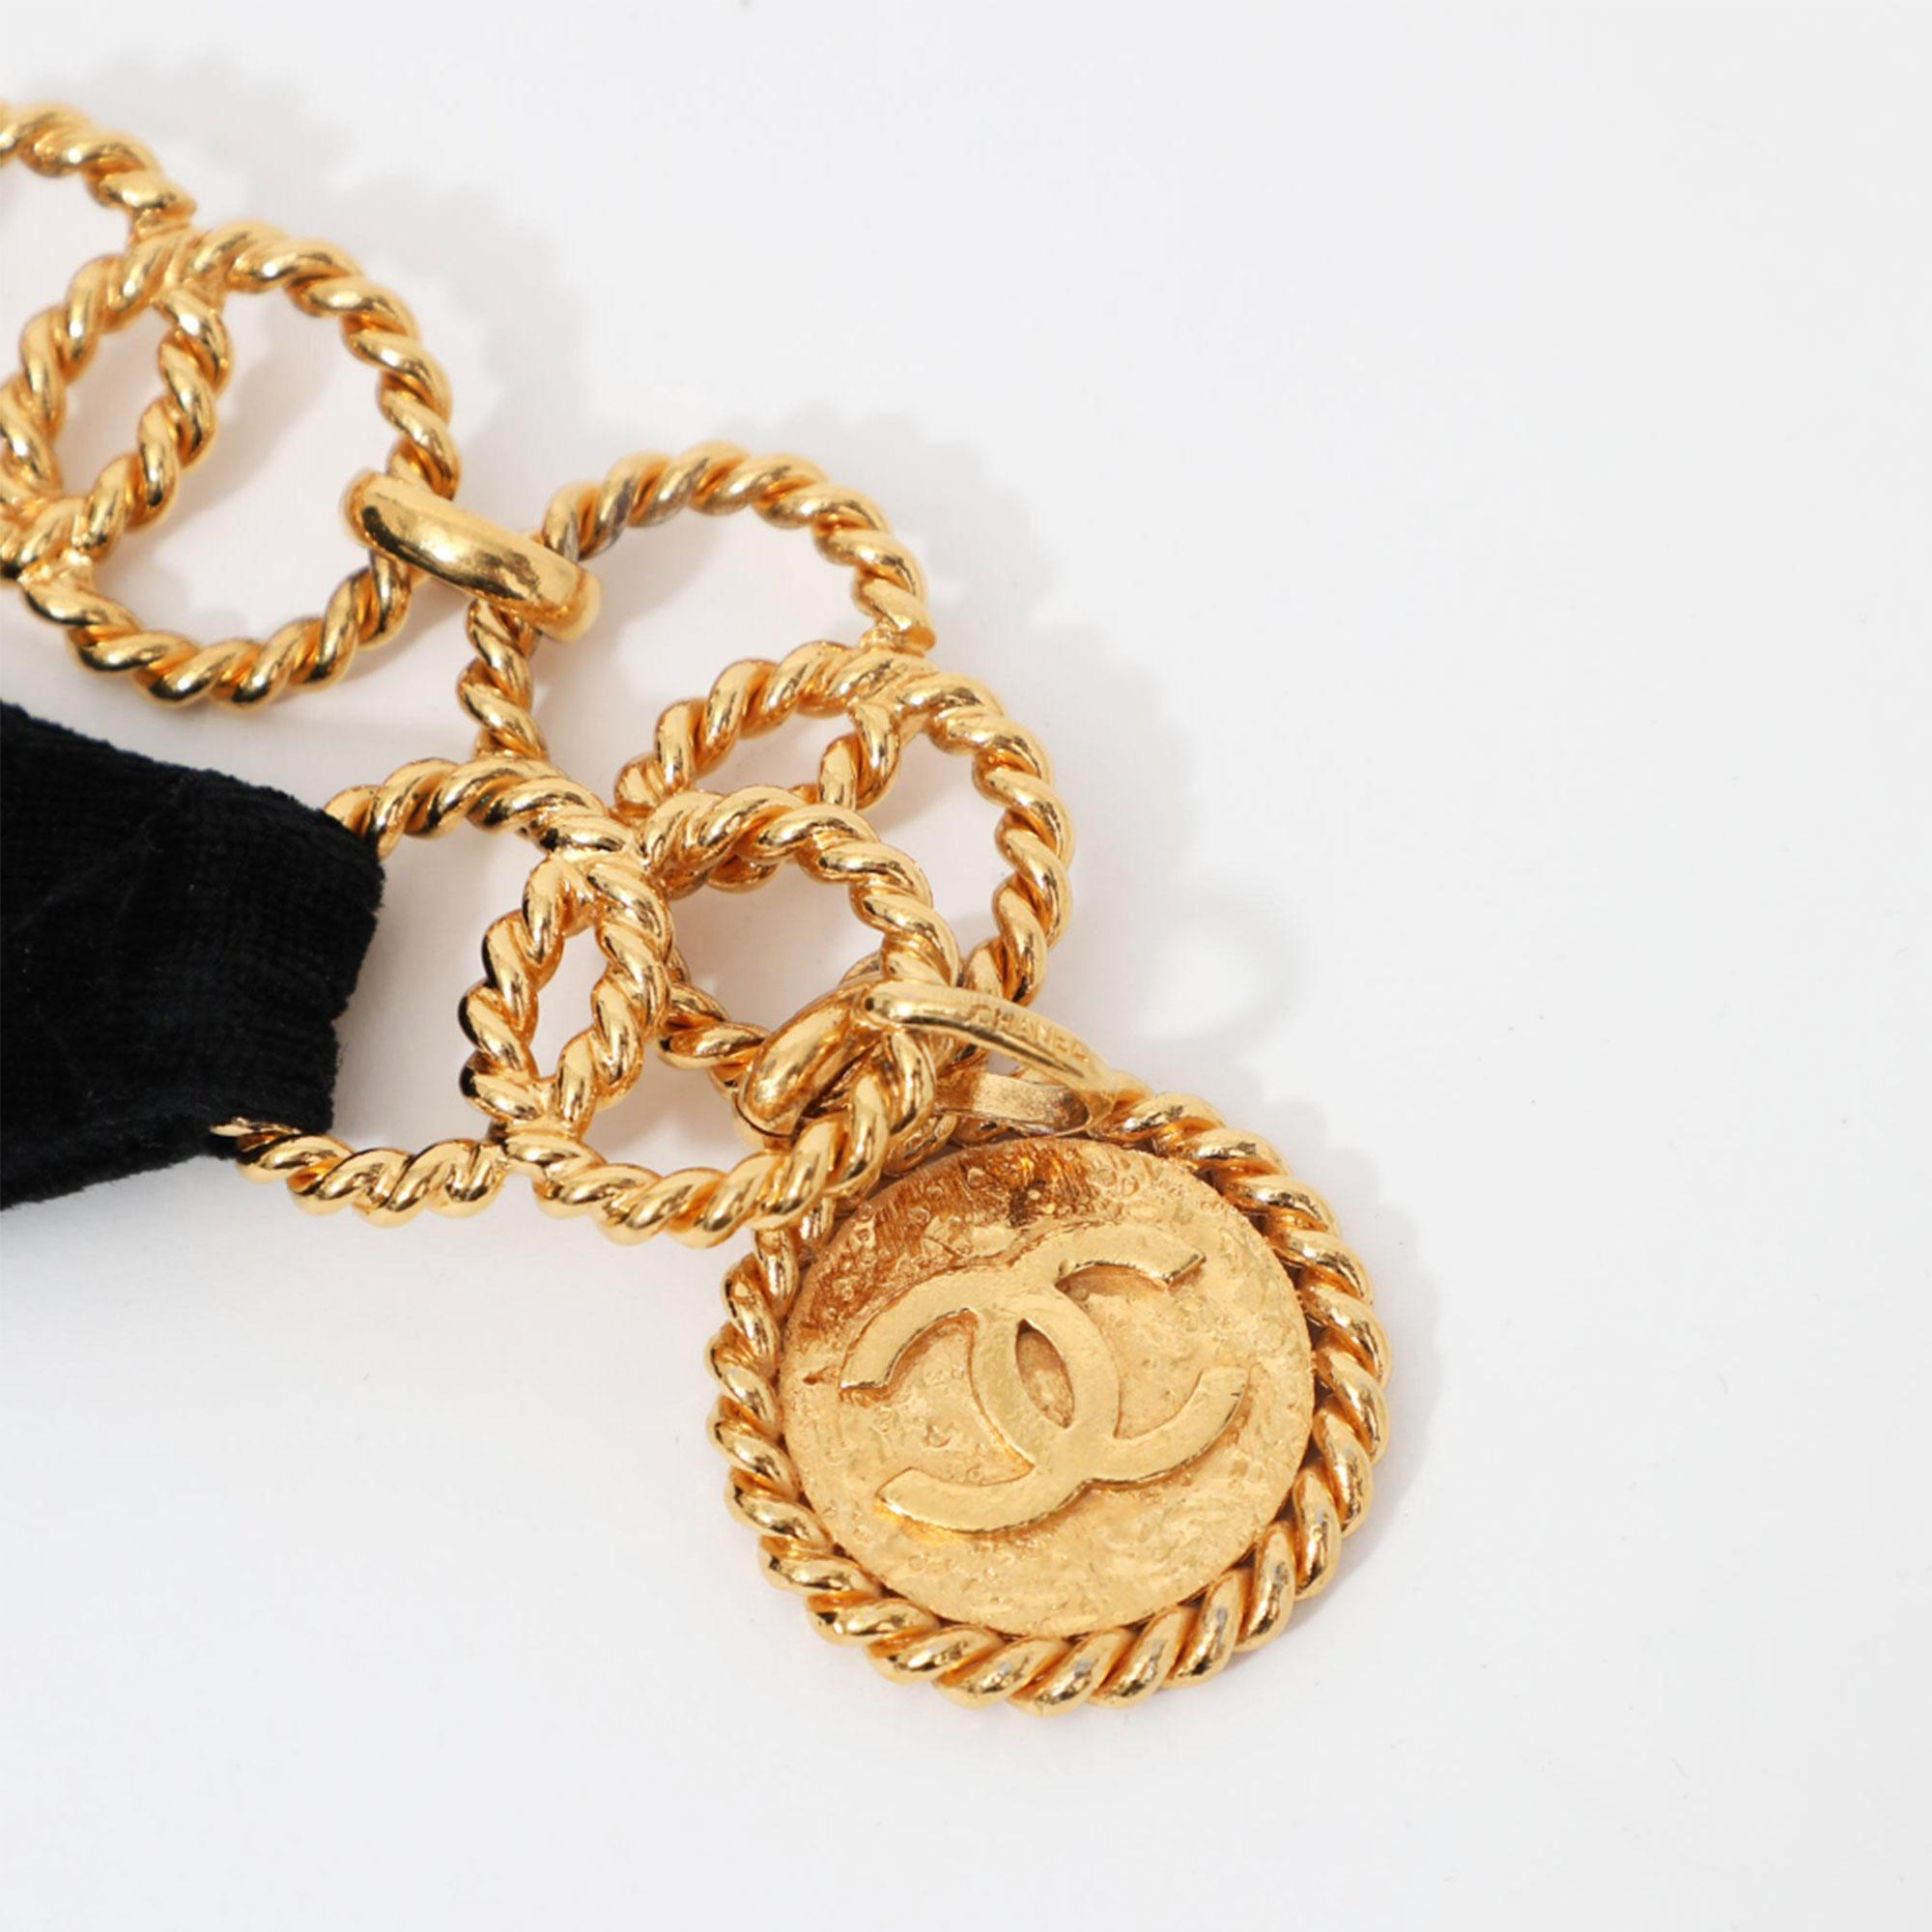 Chanel 1991 Vintage Velvet Quilted Medallion Fanny Pack Waist Belt Bag Rare Bag For Sale 4